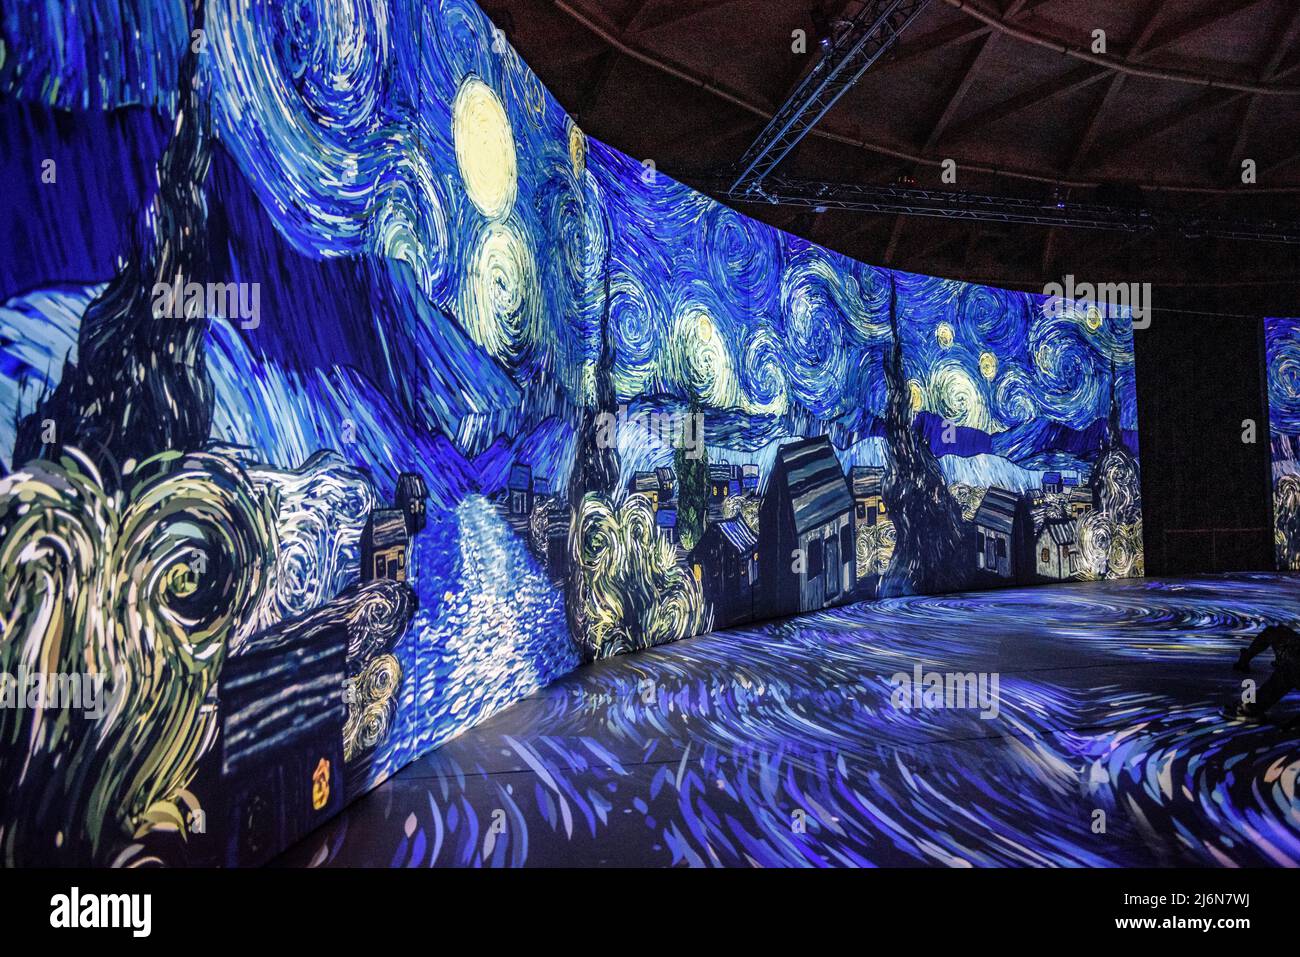 Immersive exhibition about Van Gogh in Las Arenas shopping center (Barcelona, Catalonia, Spain) ESP: Exposición inmersiva sobre Van Gogh en Barcelona Stock Photo